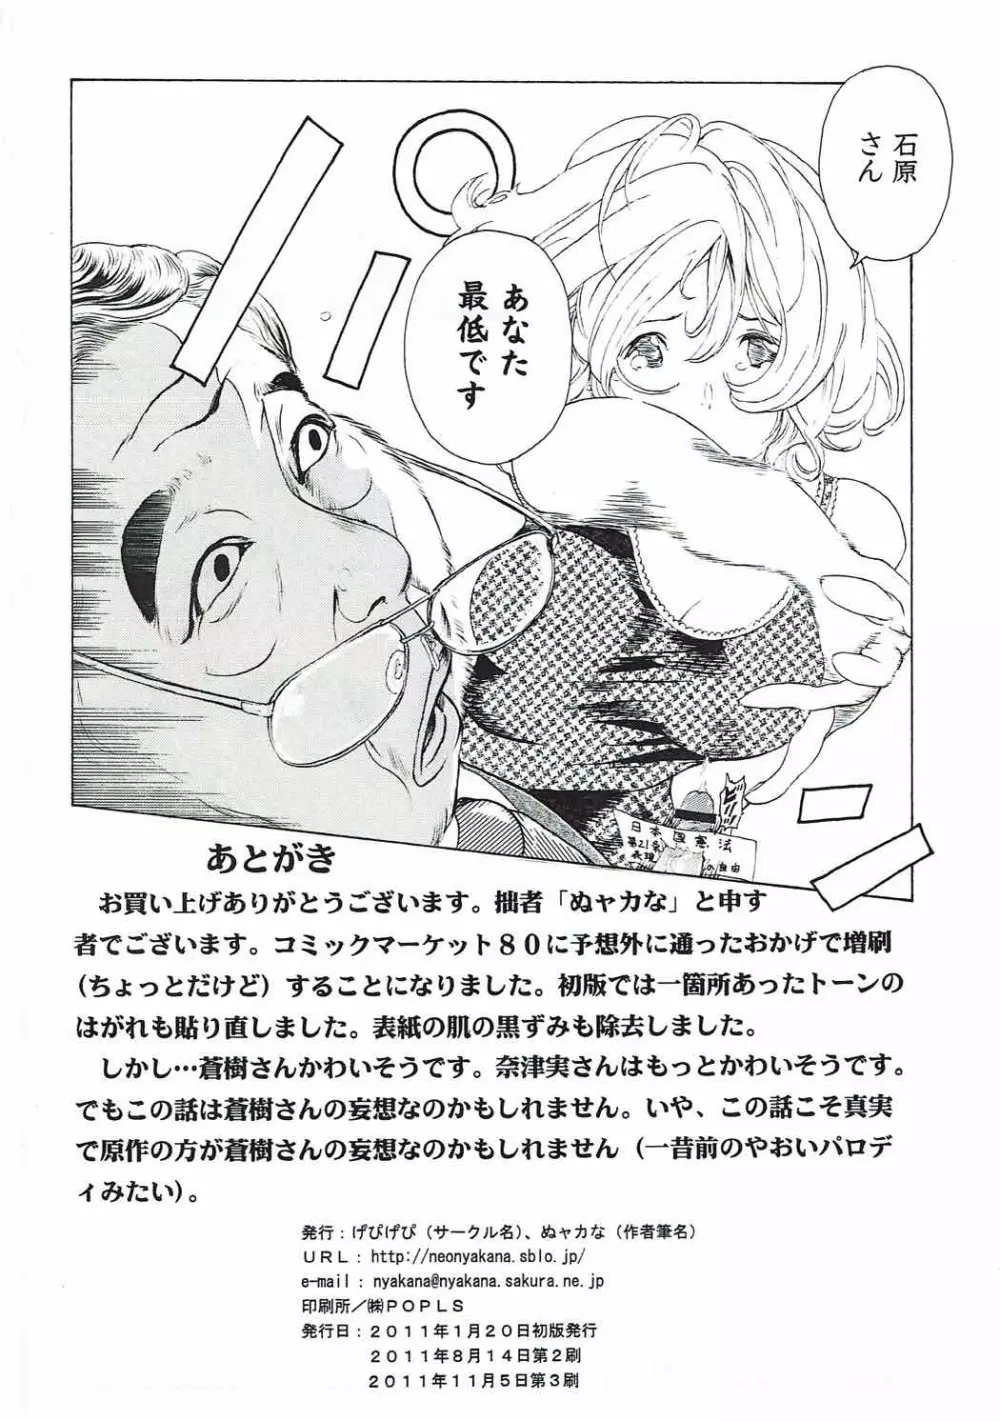 [け゜ぴけ゜ぴ (ぬャカな)] MANKOKU漫画家(とアシスタント)残酷物語 (バクマン。) 37ページ